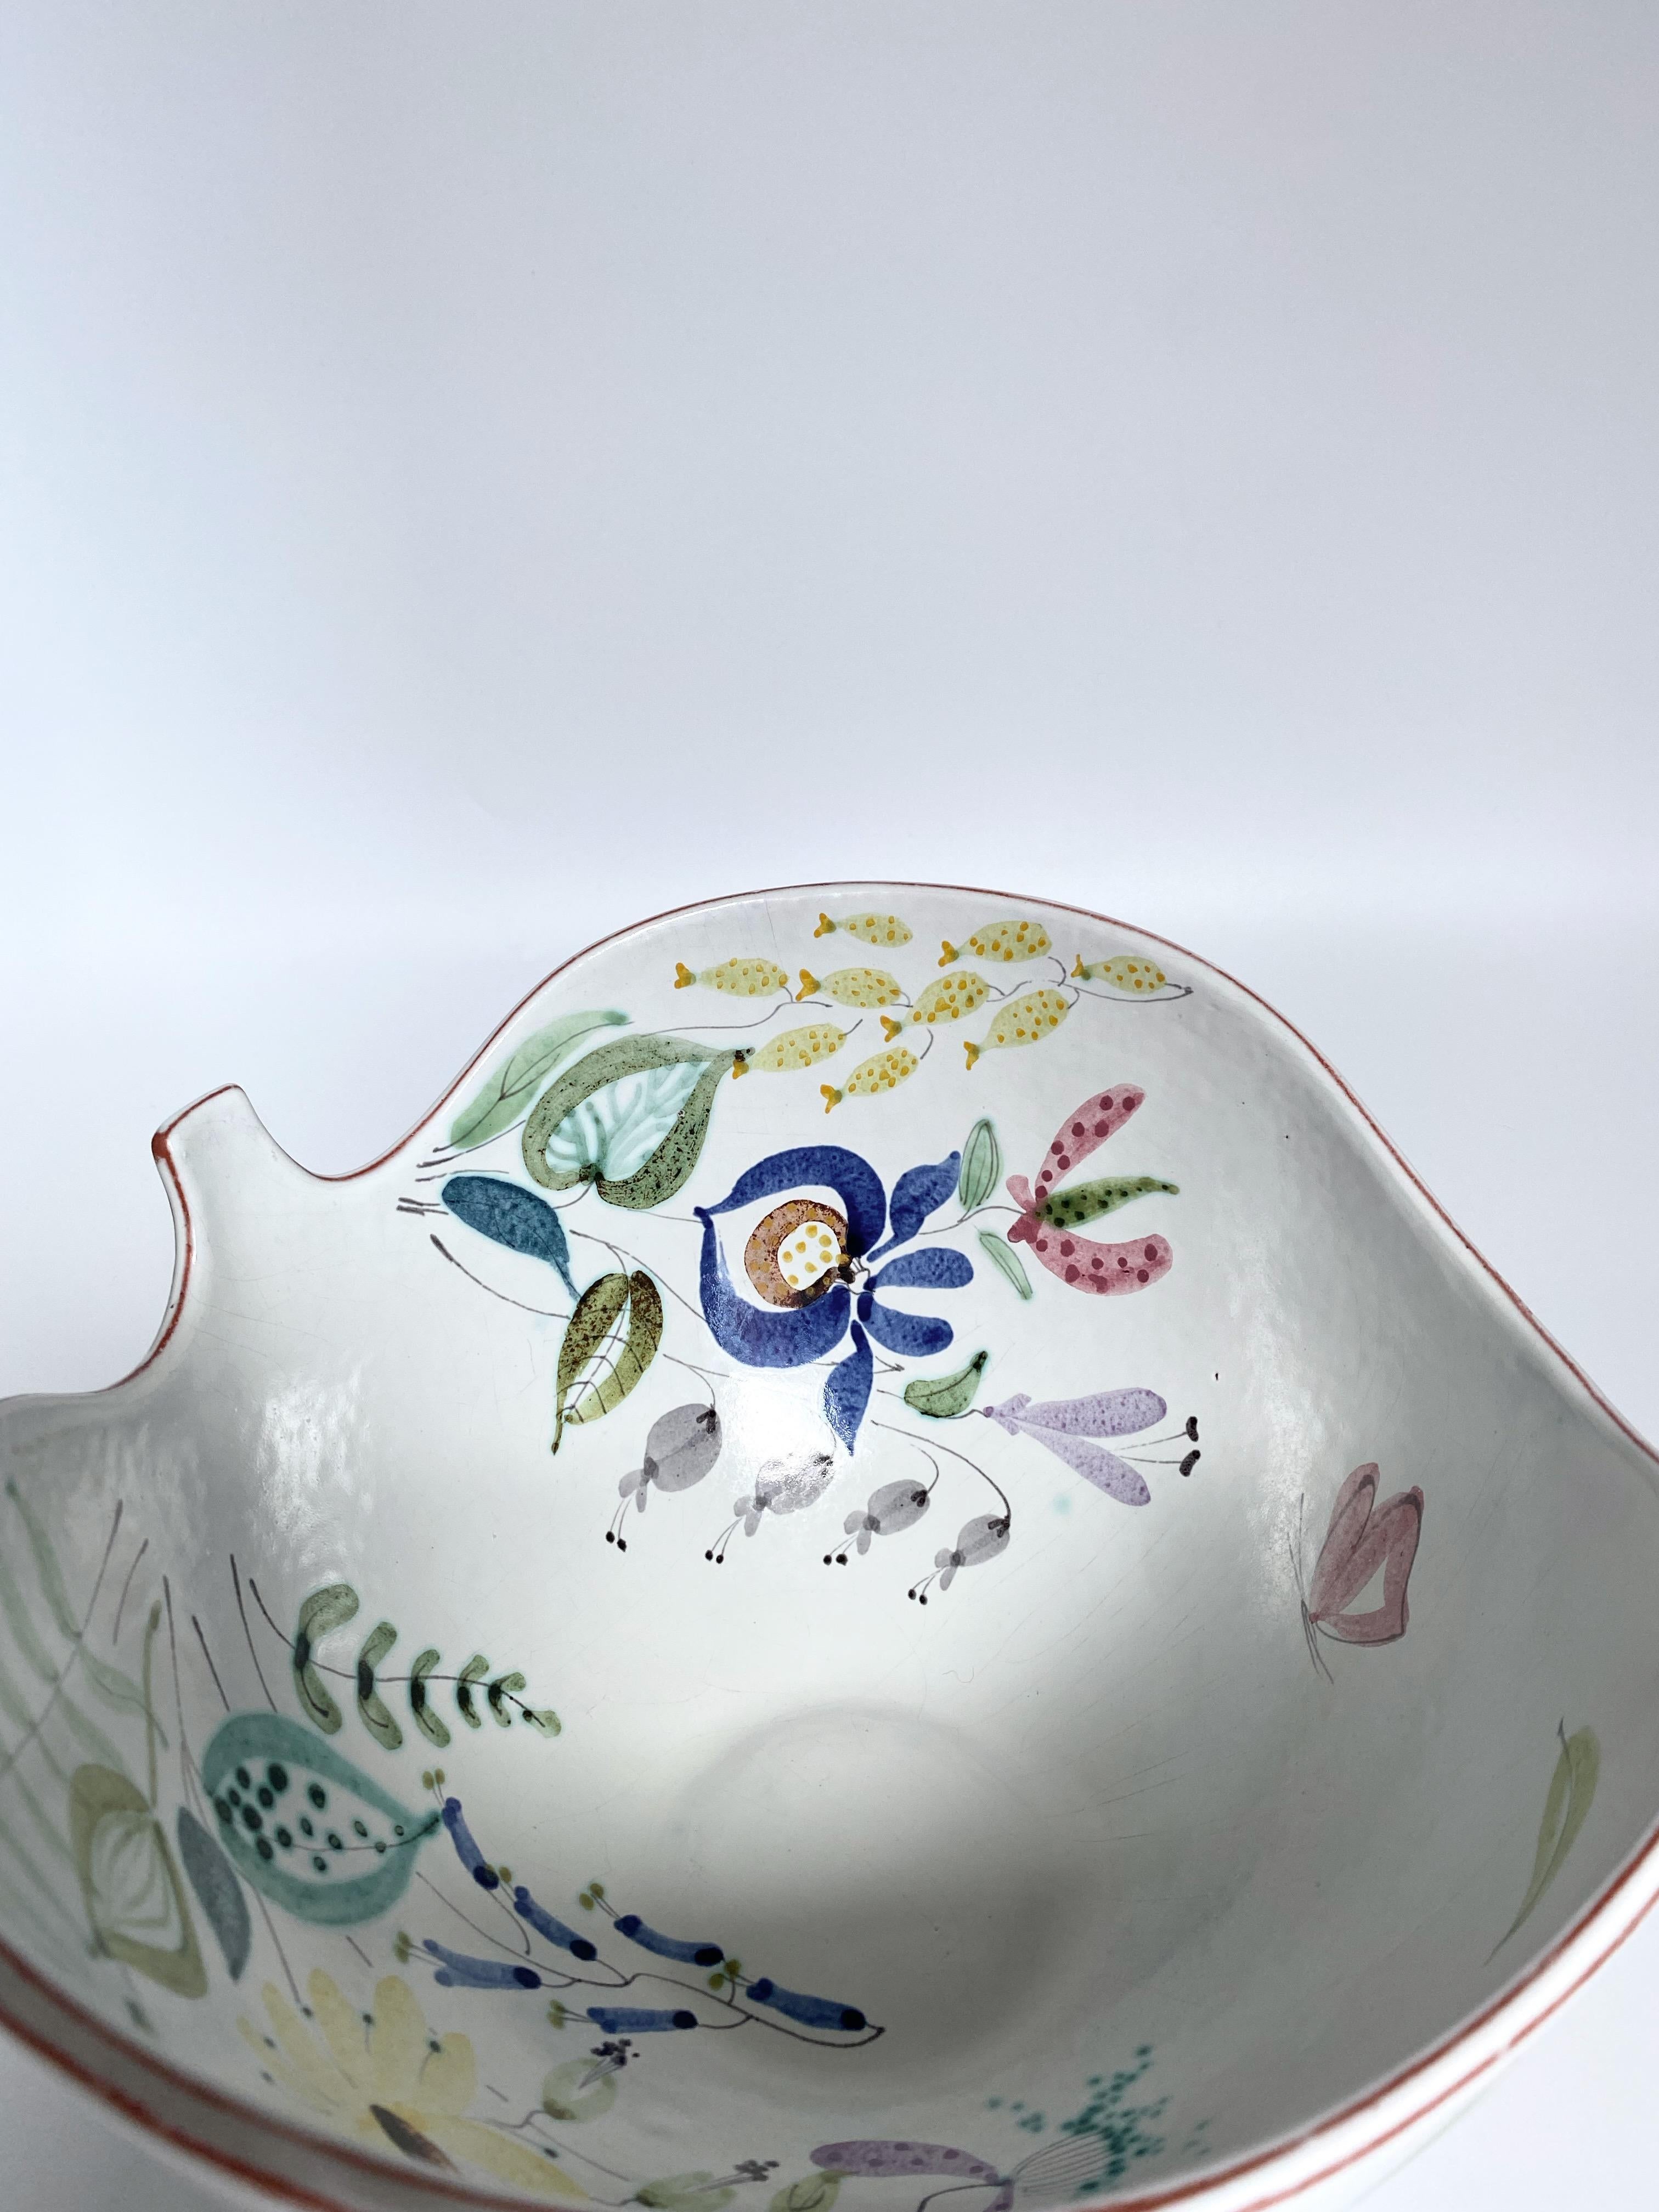 Wunderschöne große Fayence-Keramikschale und Teller von Stig Lindberg für Gustavsberg. Milchig-weiße Keramik mit einer Auswahl von Blumenmotiven in leuchtenden Farben, gemalt von der Fayence-Malerin Anita Roi nach einem Entwurf von Stig Lindbergs.